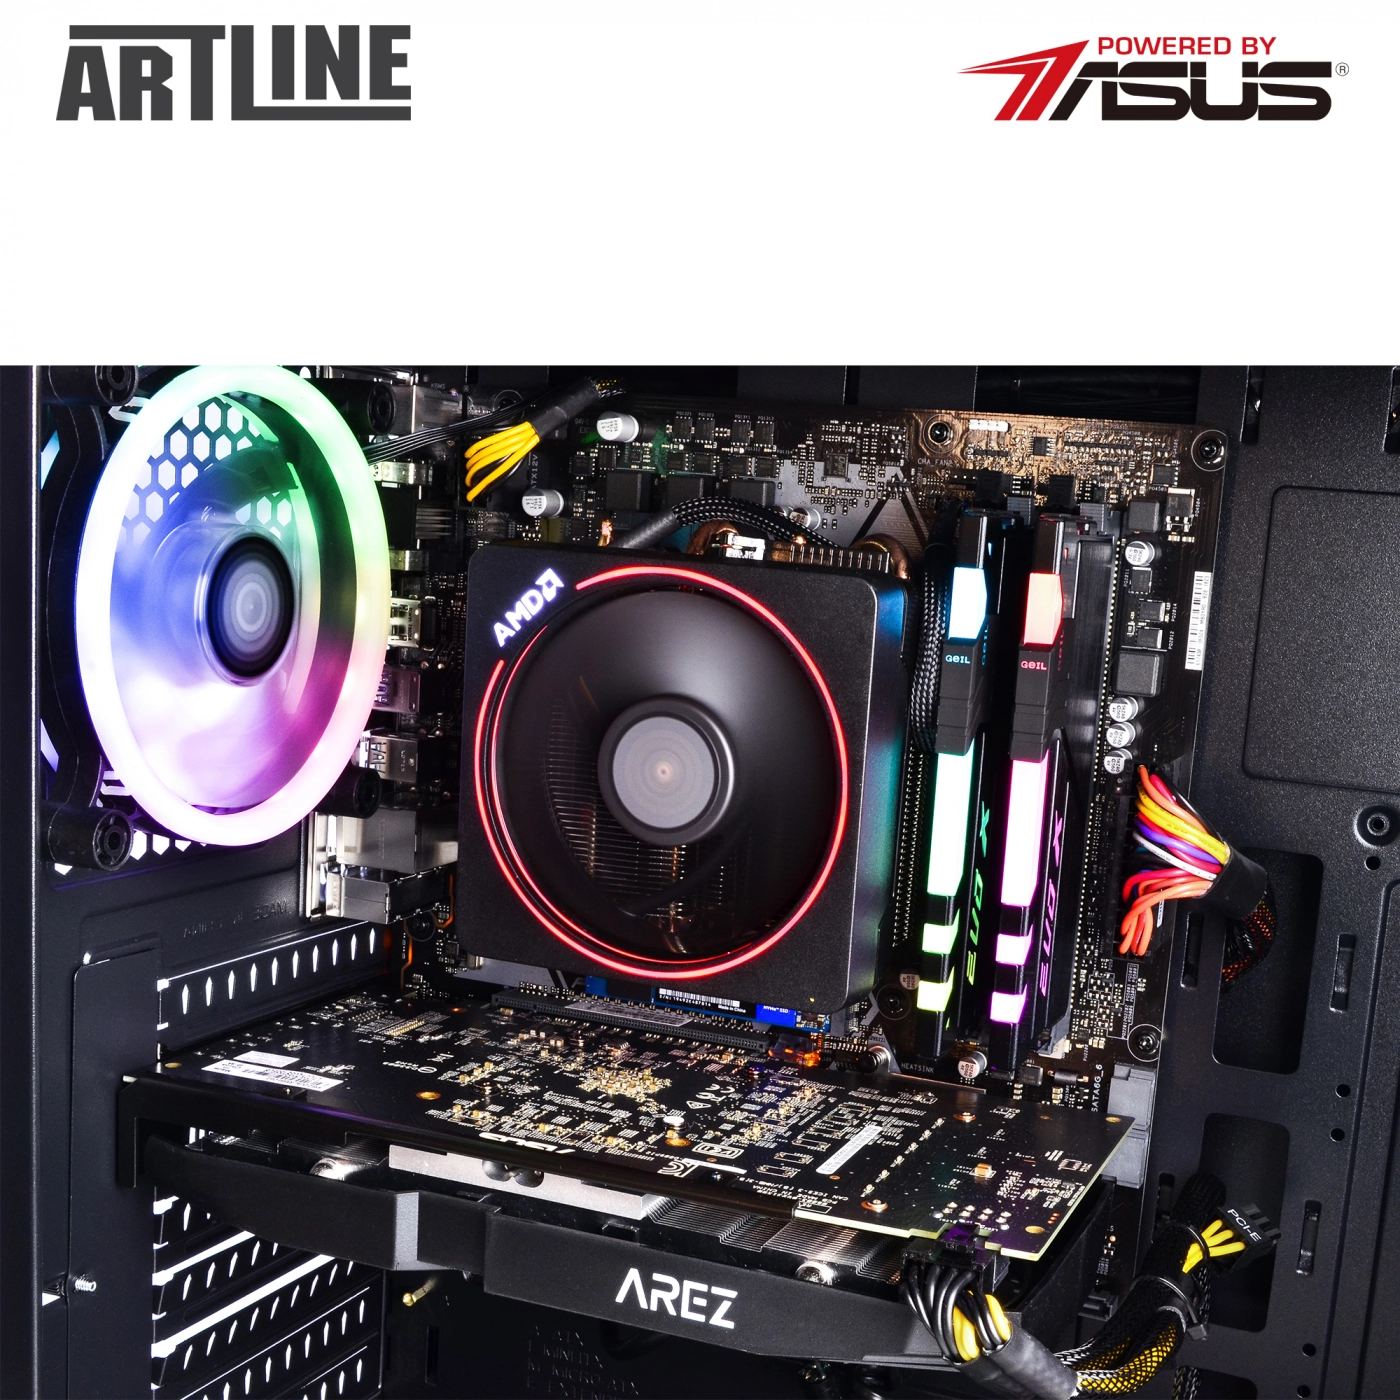 Купить Компьютер ARTLINE Gaming X68v01 - фото 3